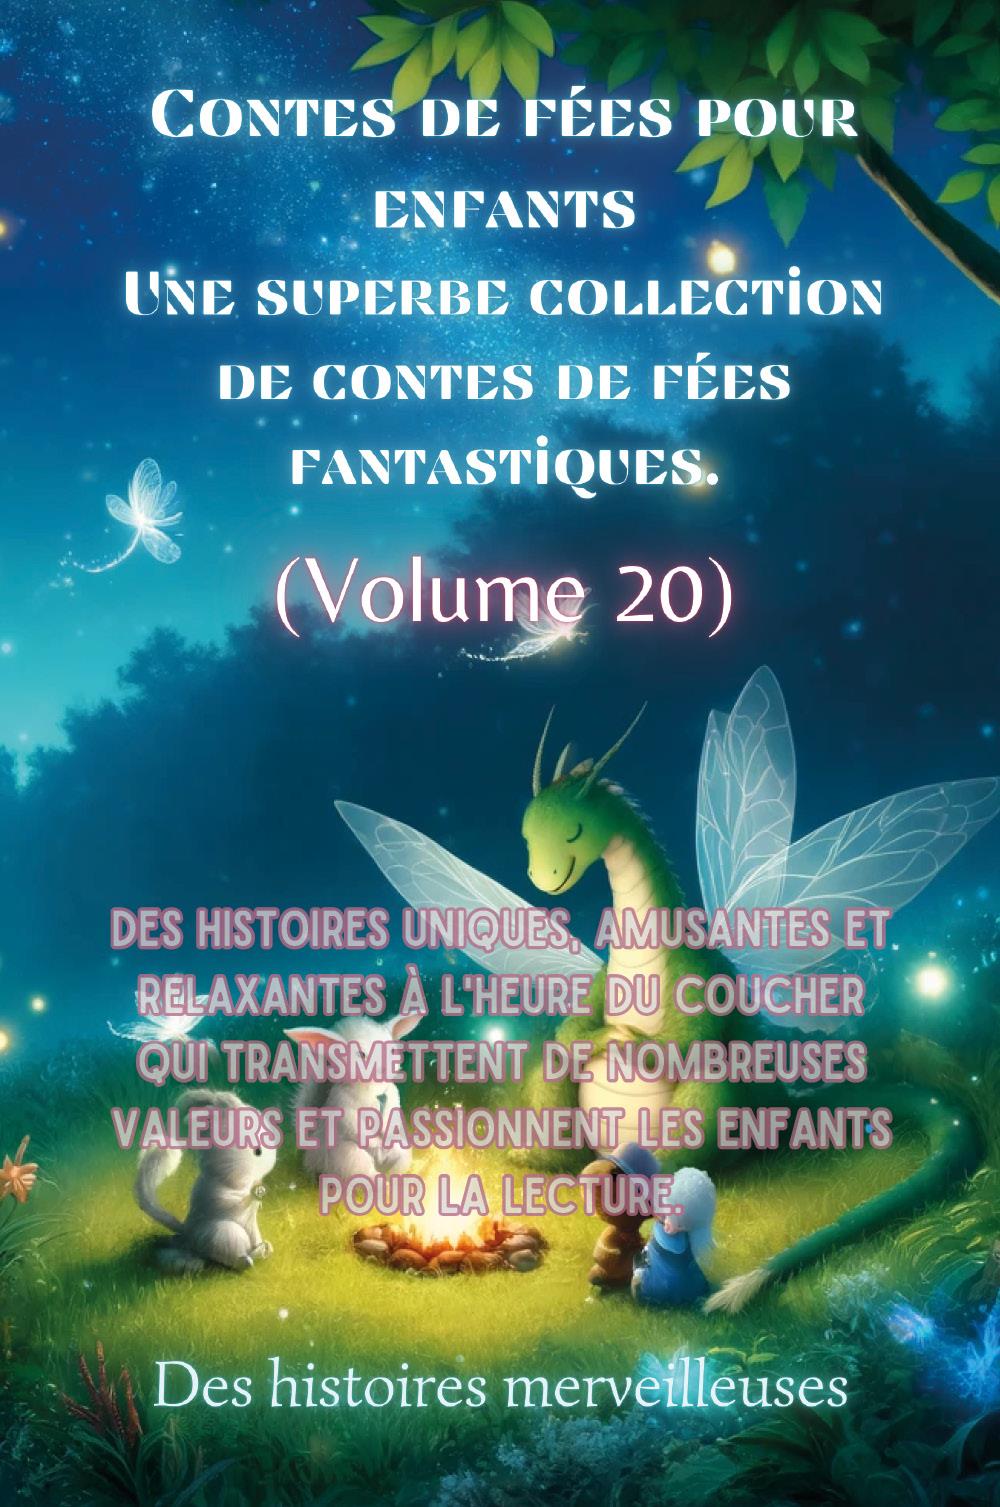 Contes de fées pour enfants Une superbe collection de contes de fées fantastiques. (Volume 20)